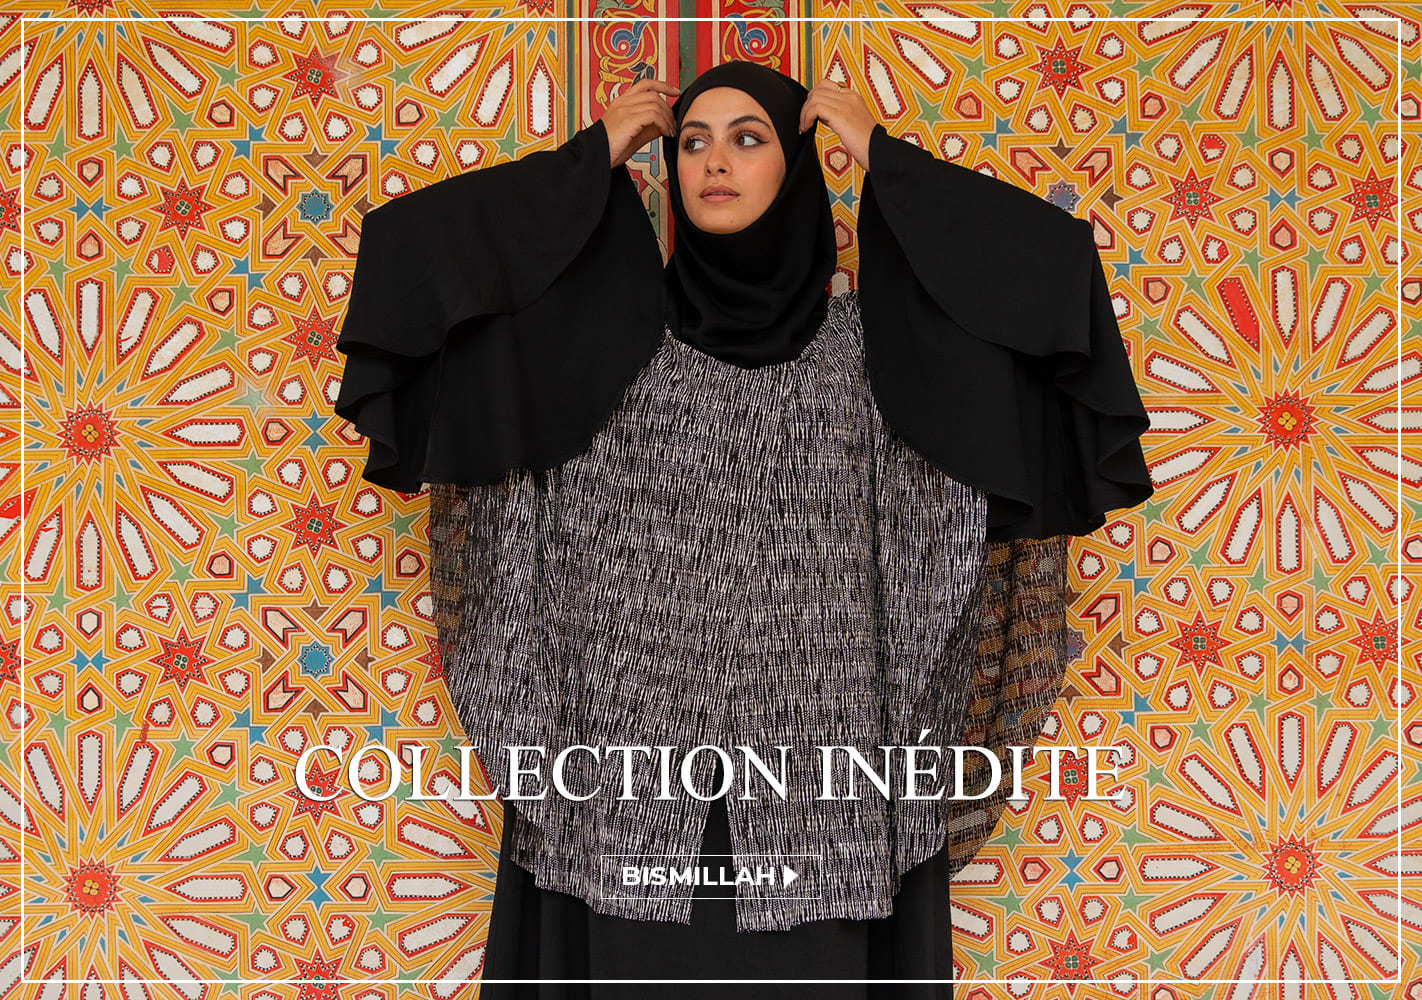 Survêtement femme (Boutique Vêtement Sport pour Hijab) - Couleur noir et  gris - Prêt à porter et accessoires sur